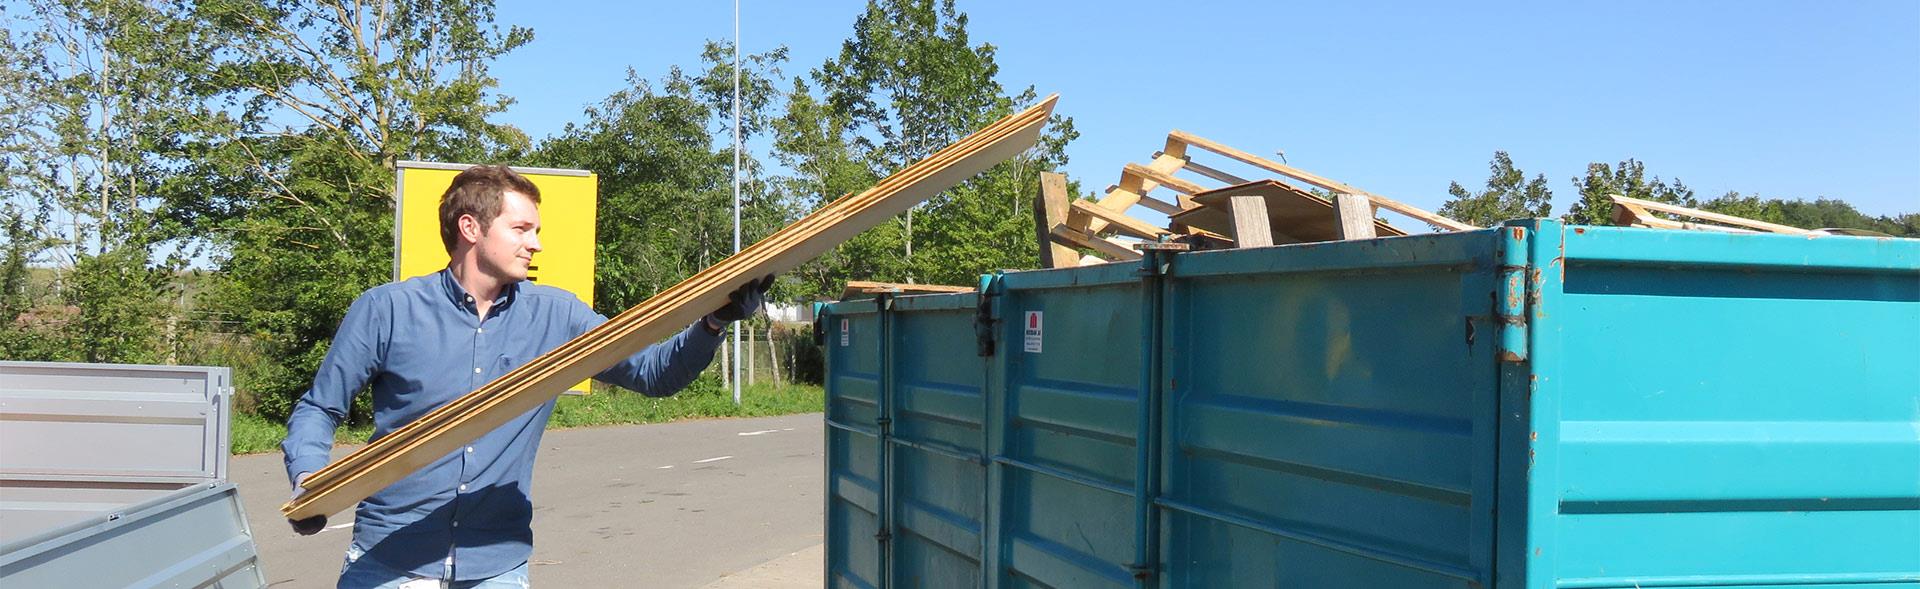 Mand smider brædder i container på genbrugsplads